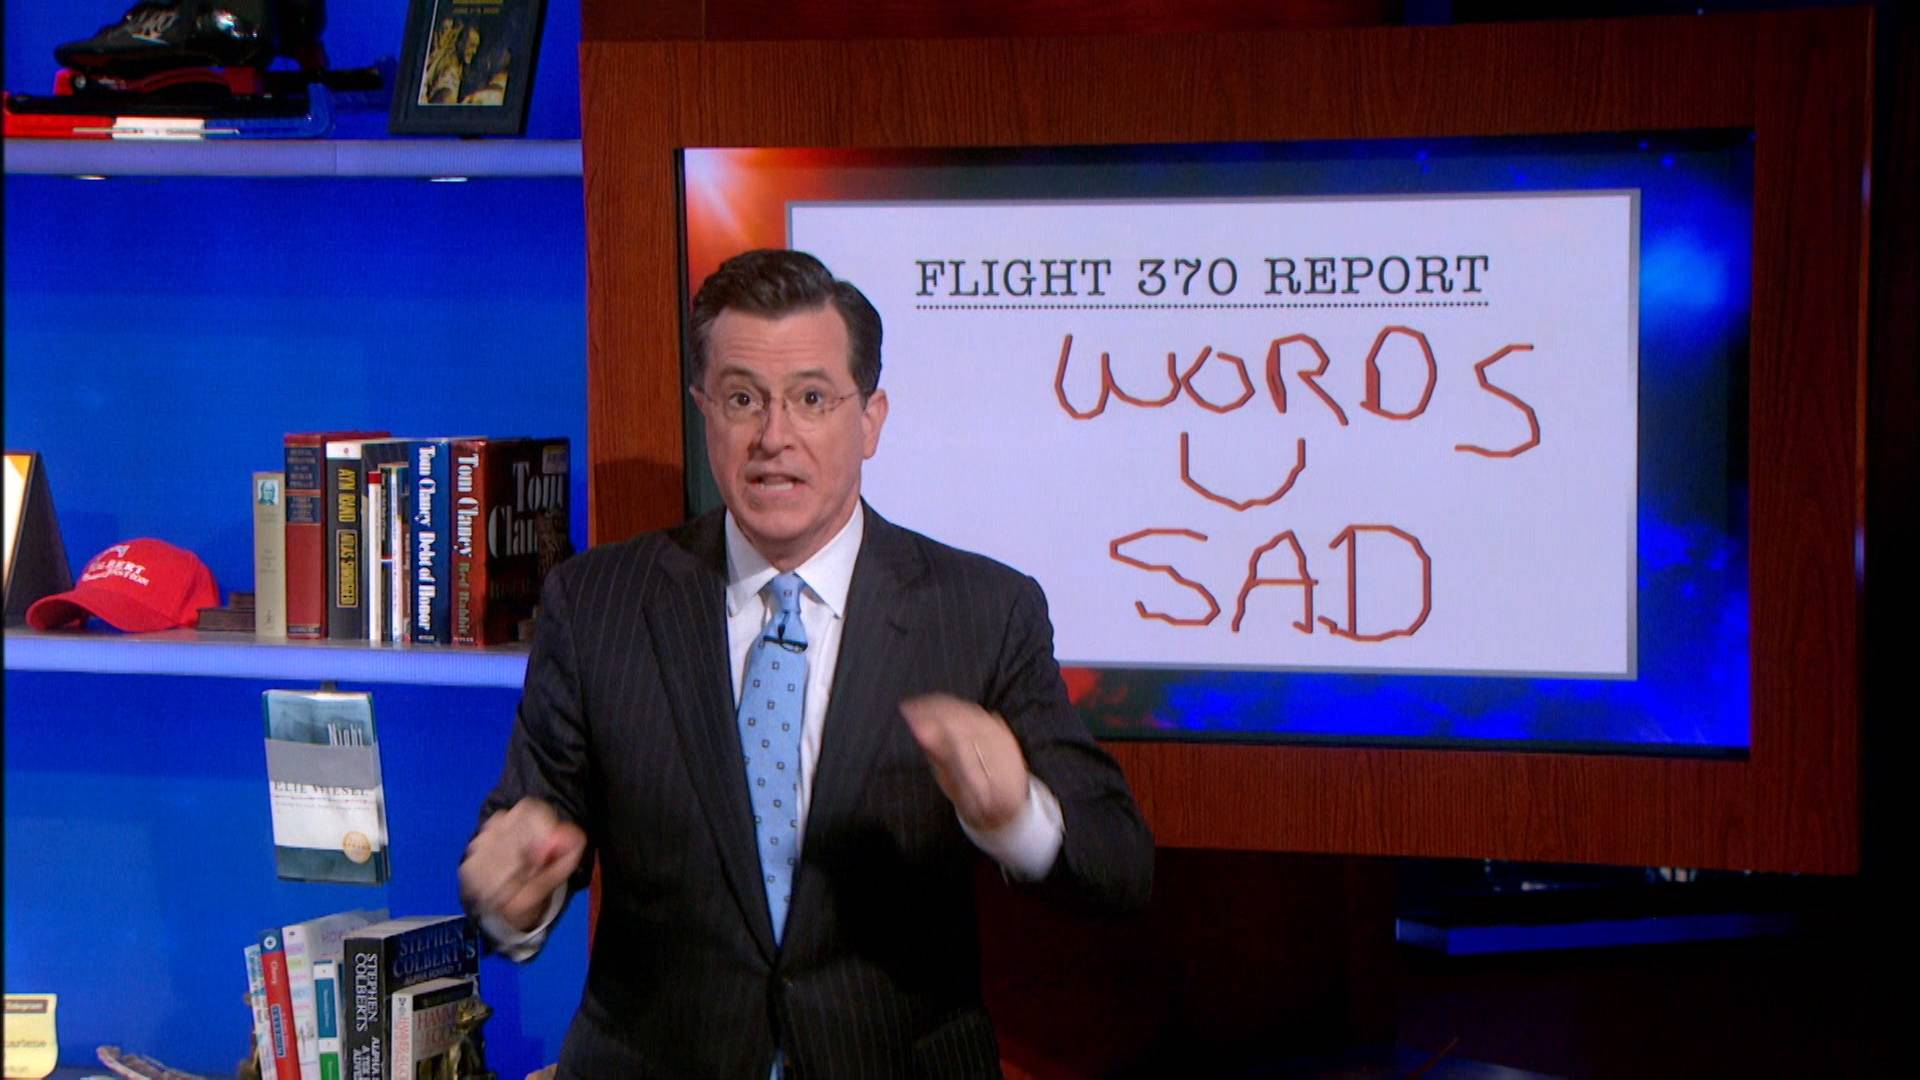 Cnns Endless Wait For Flight 370 News The Colbert Report Video Clip